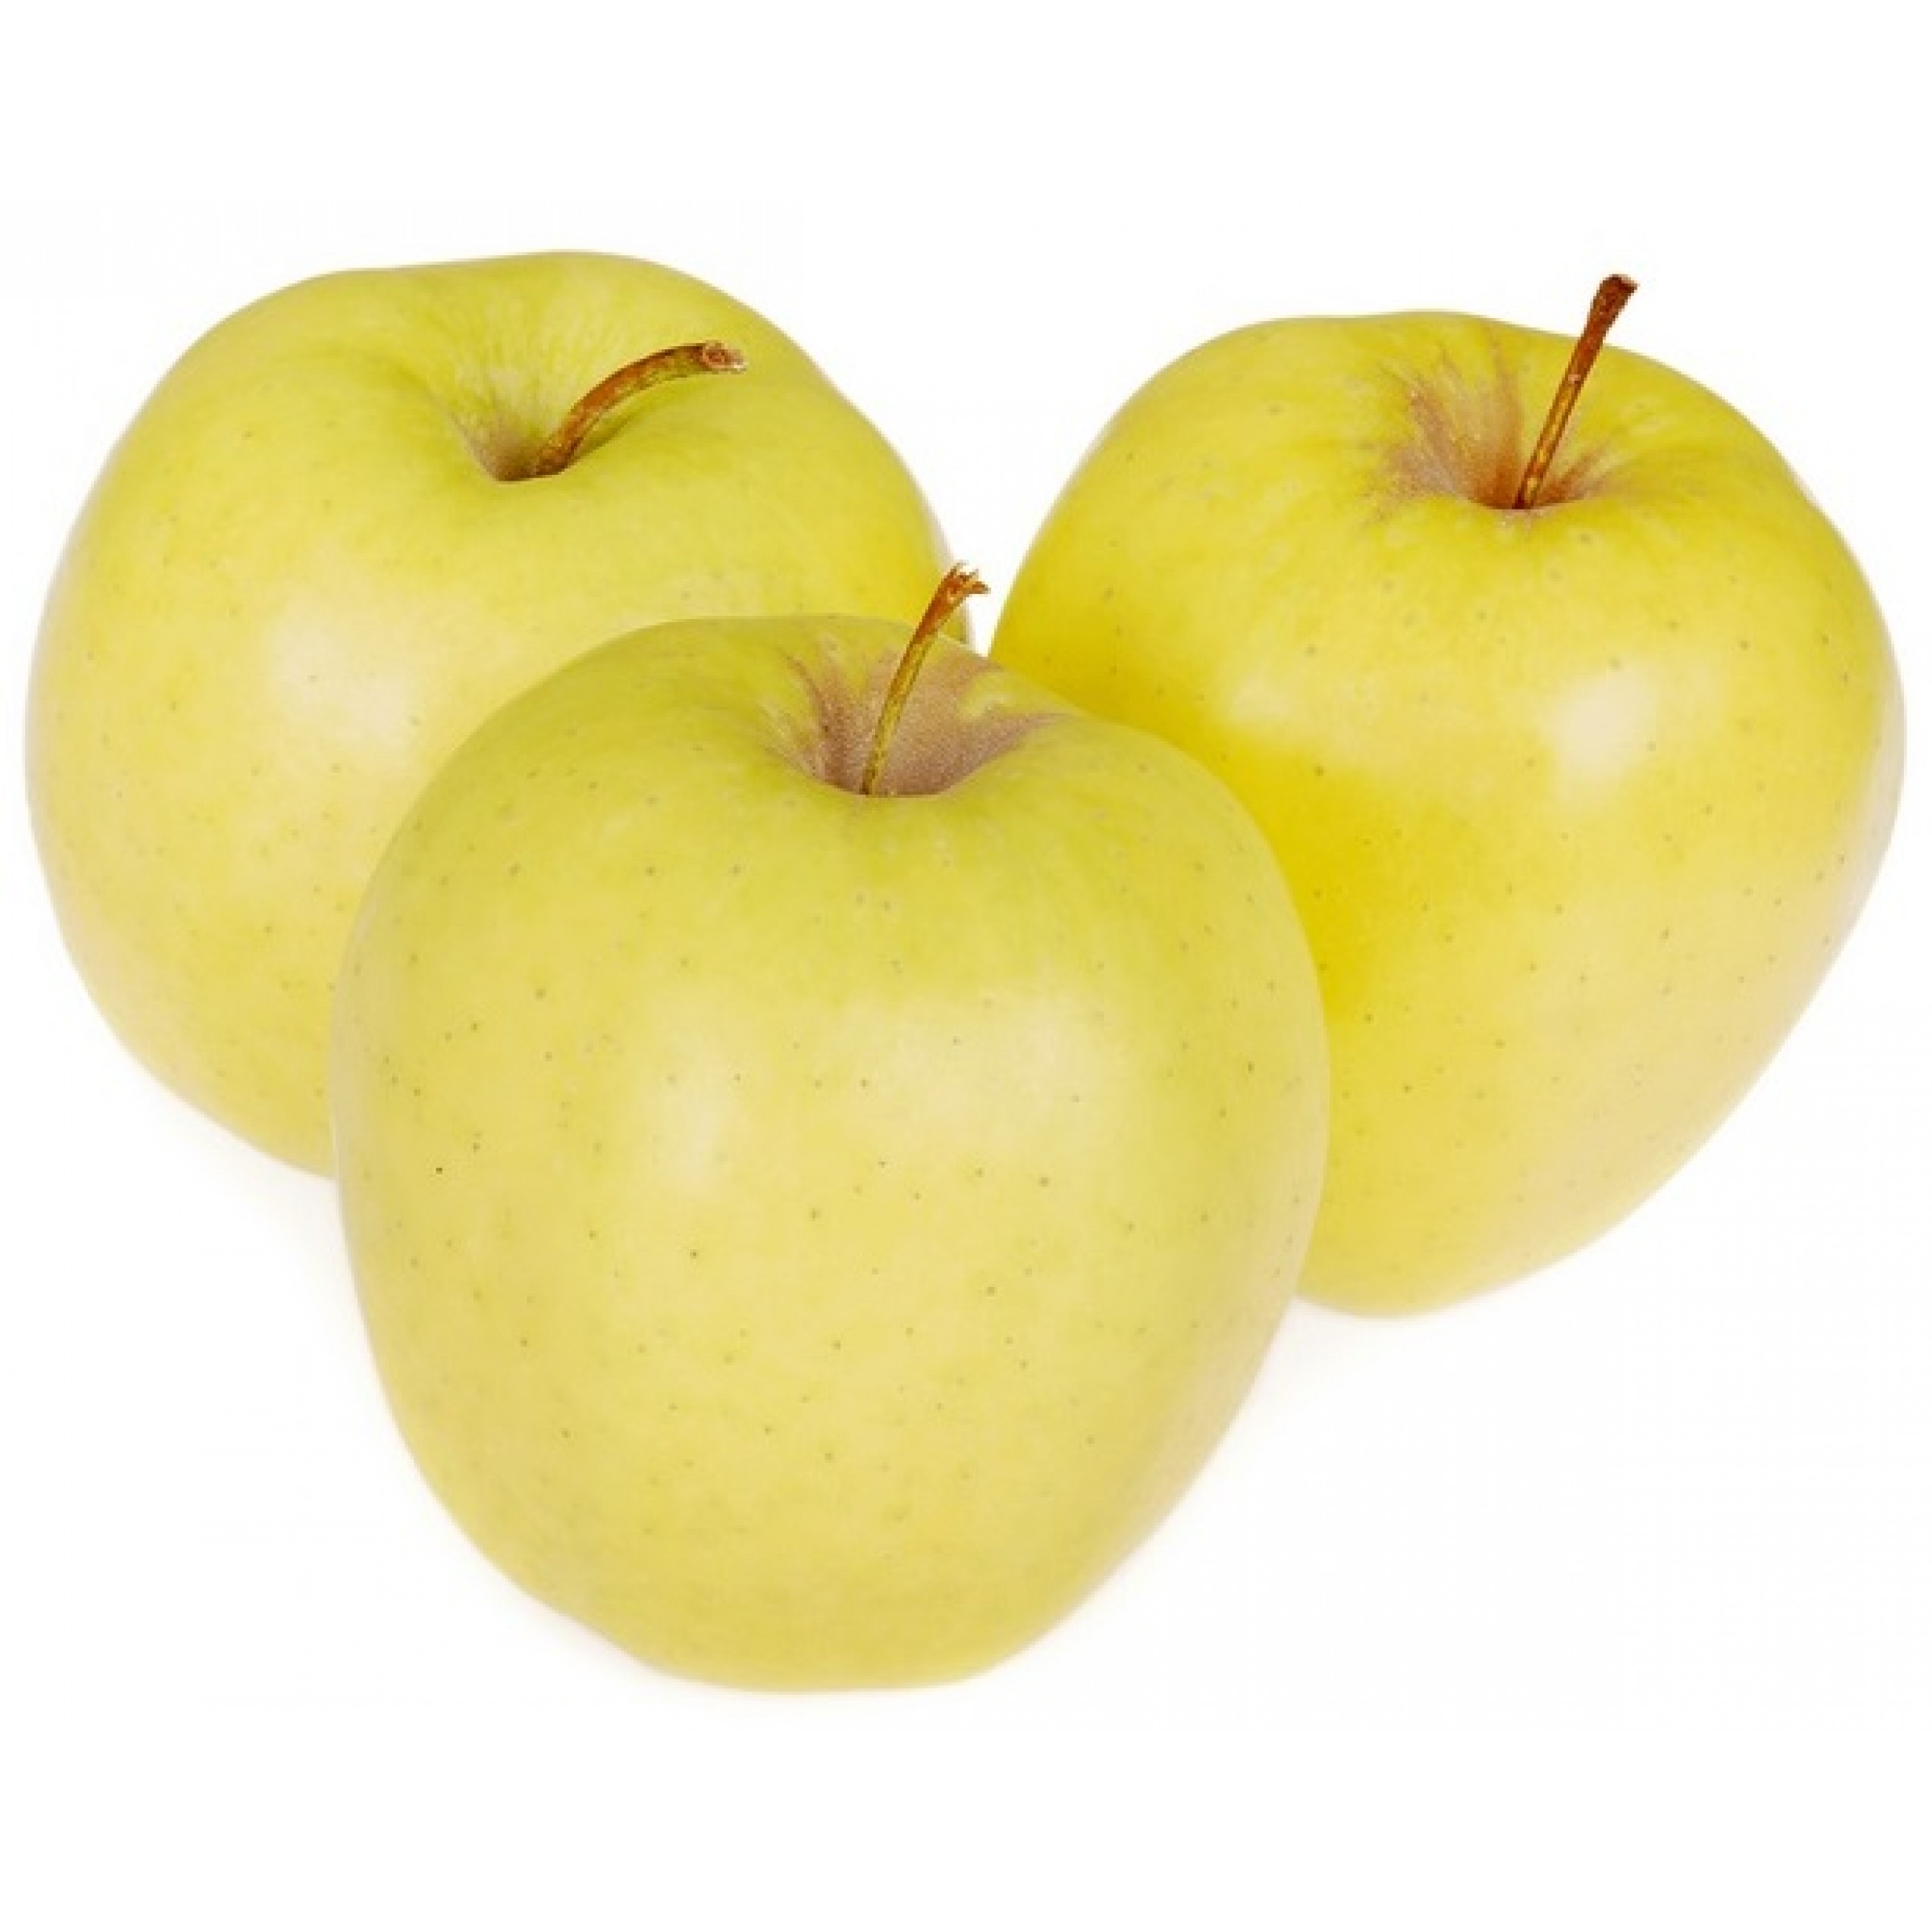 Желтые яблоки Голден весовые (средний вес: 1200 г)